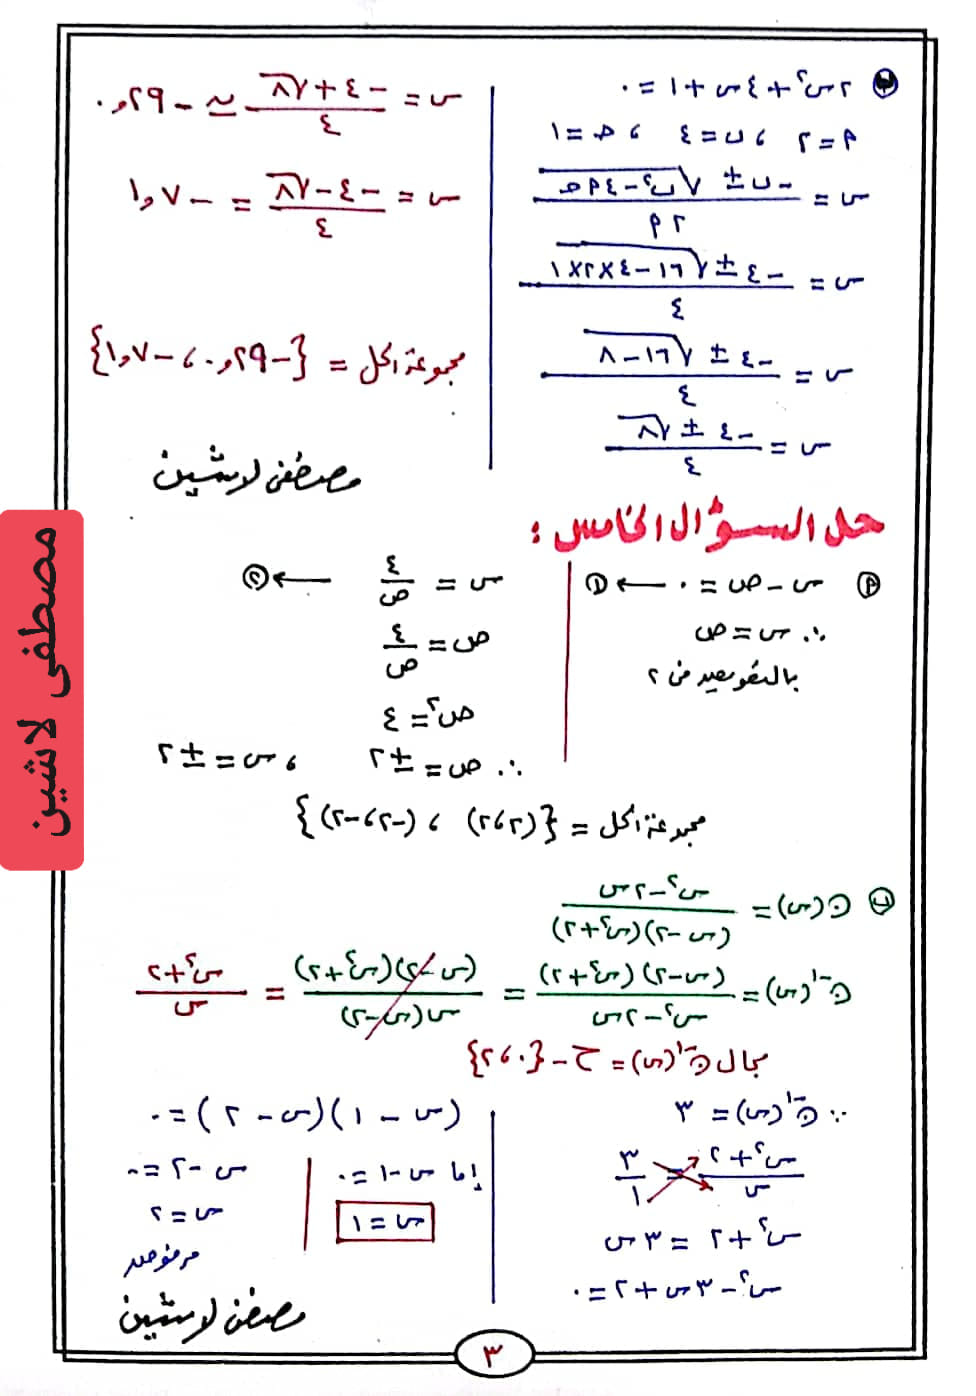 مدرس دوت كوم حل النموذج الثالث فى الجبر إمتحان الدقهلية ٢٠١٩ من مذكرة توجيه الرياضيات بالدقهلية ٢٠٢٤ للصف الثالث الاعدادي الترم الثانى أ/ مصطفى لاشين	